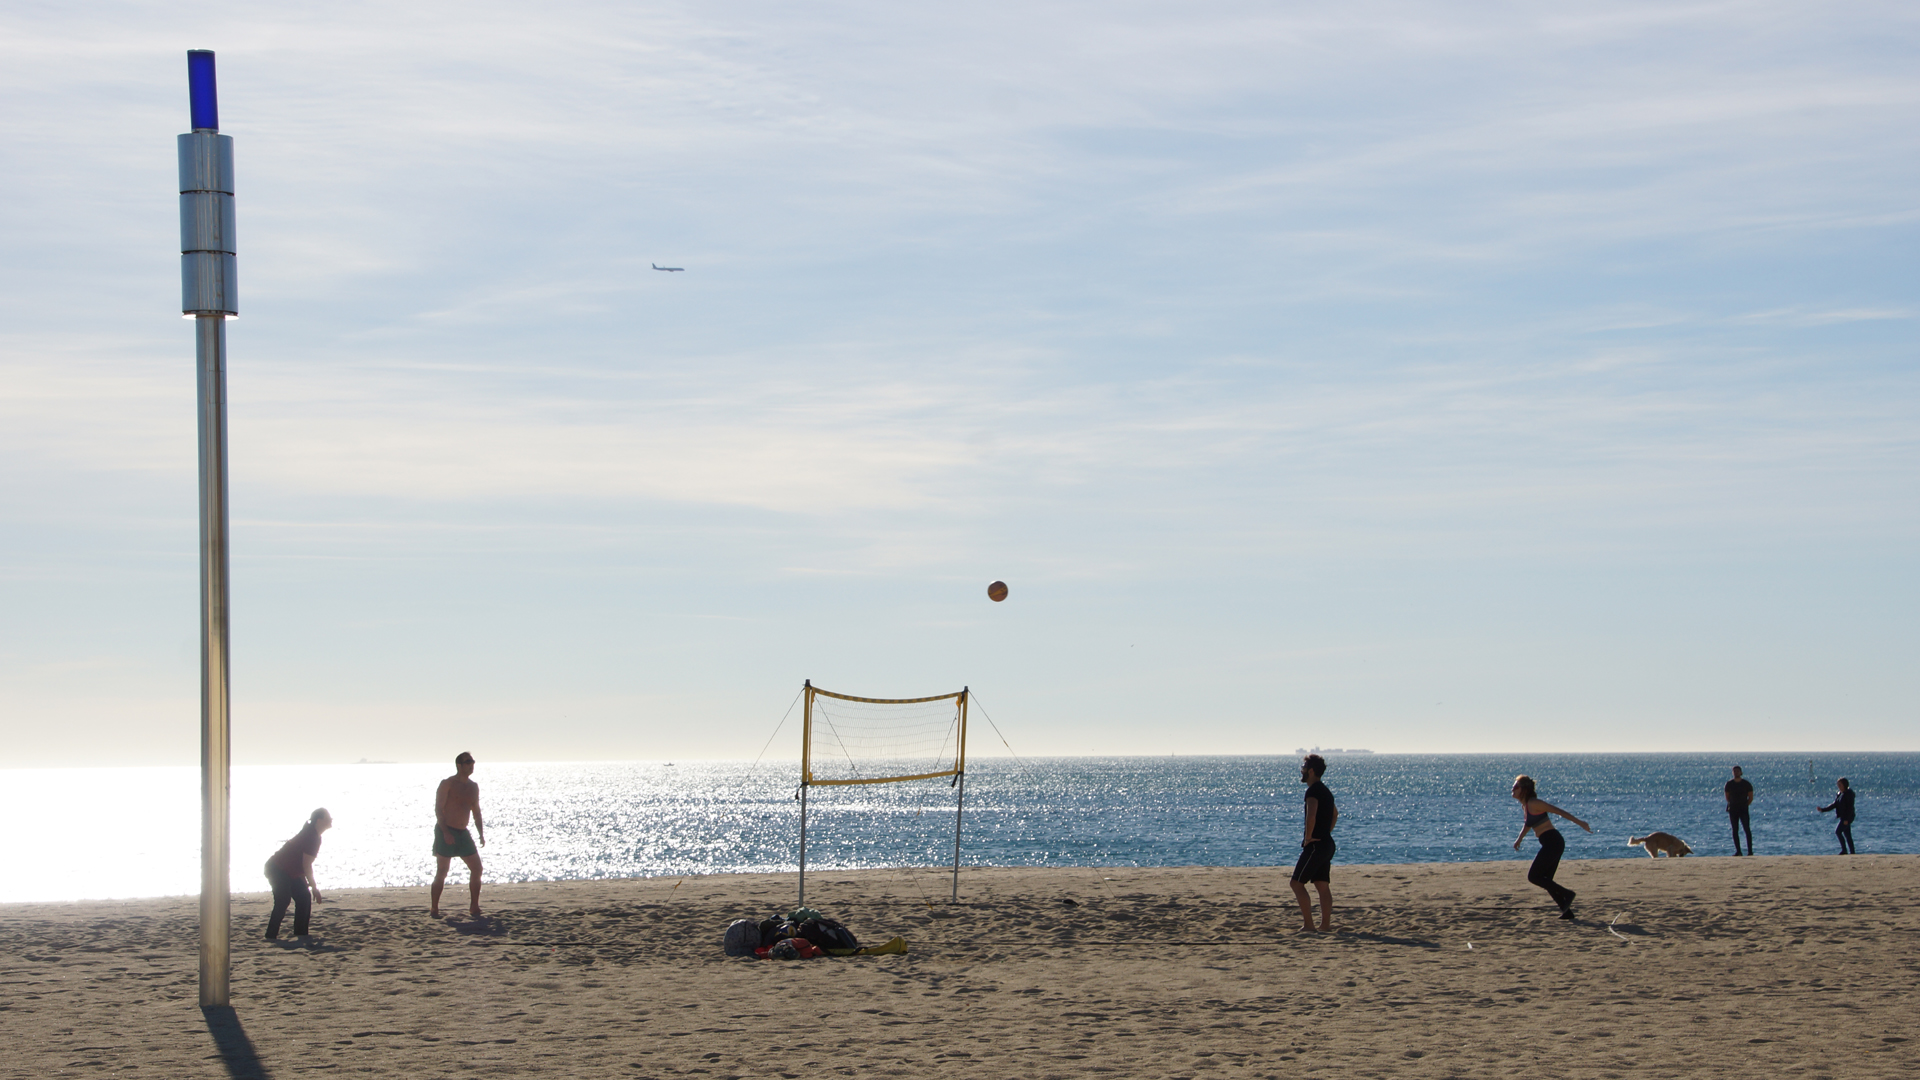 Fotostrecke Gegenlicht 14: Beachvolley am Strand von Barcelona